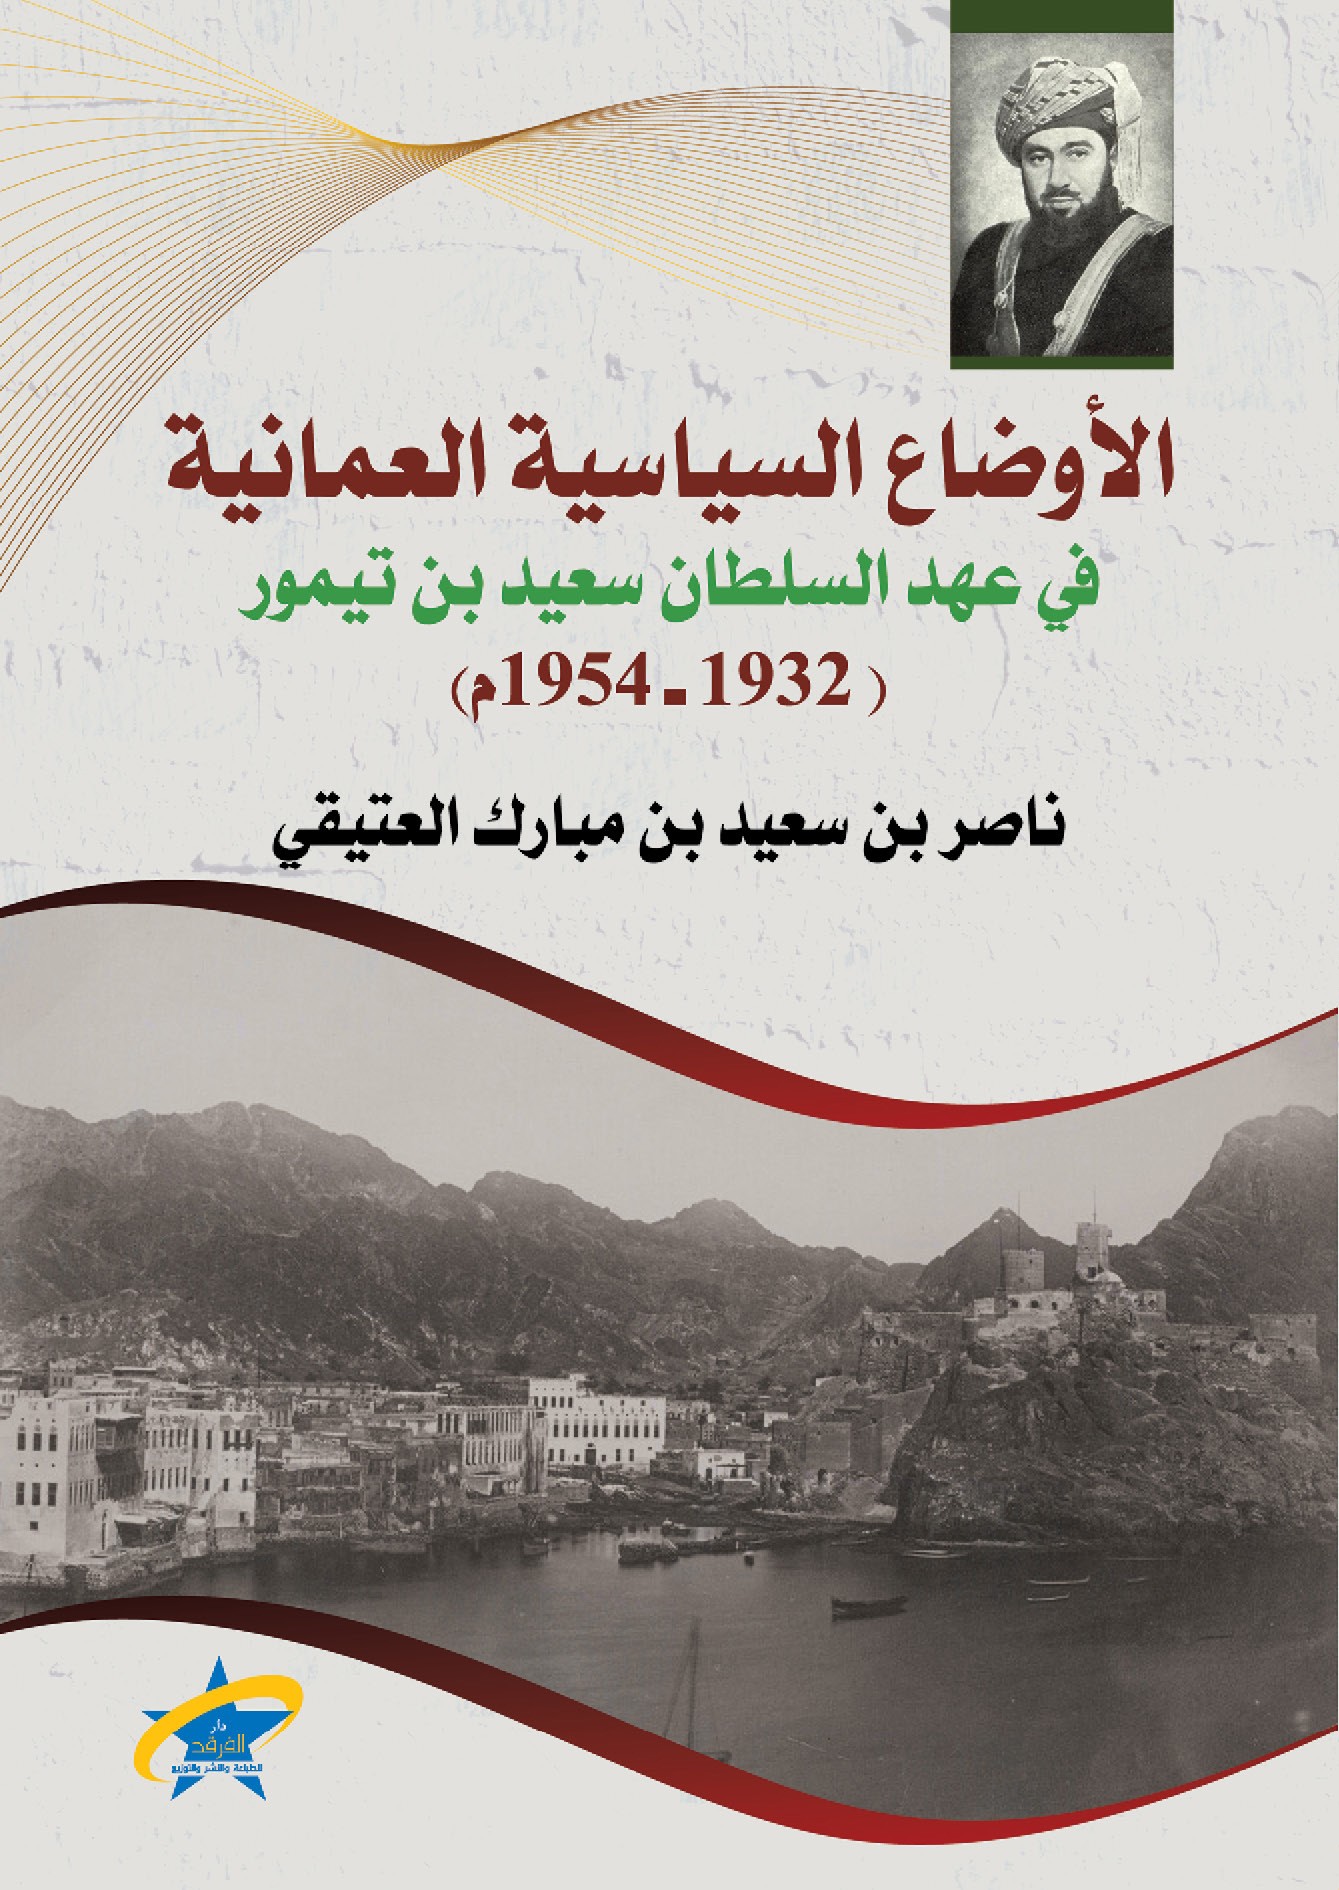 الأوضاع السياسية العمانية في عهد السلطان سعيد بن تيمور (1932- 1954م)